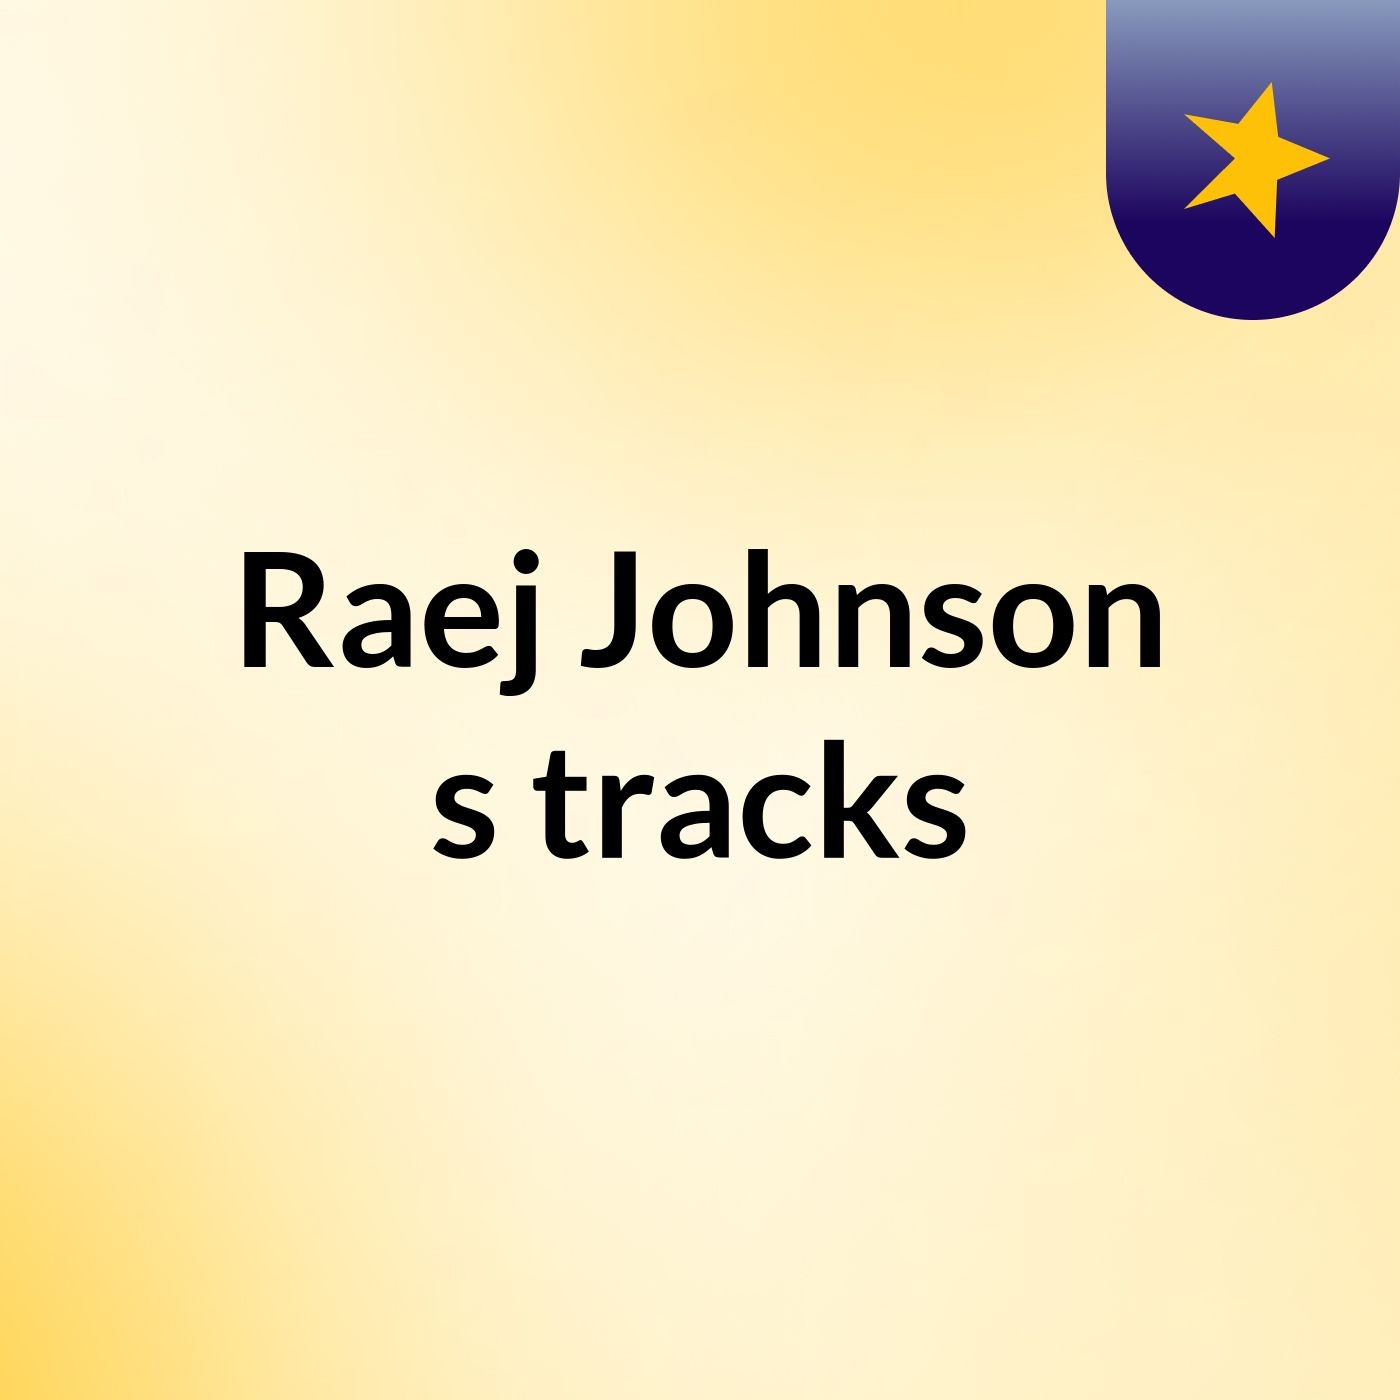 Raej Johnson's tracks